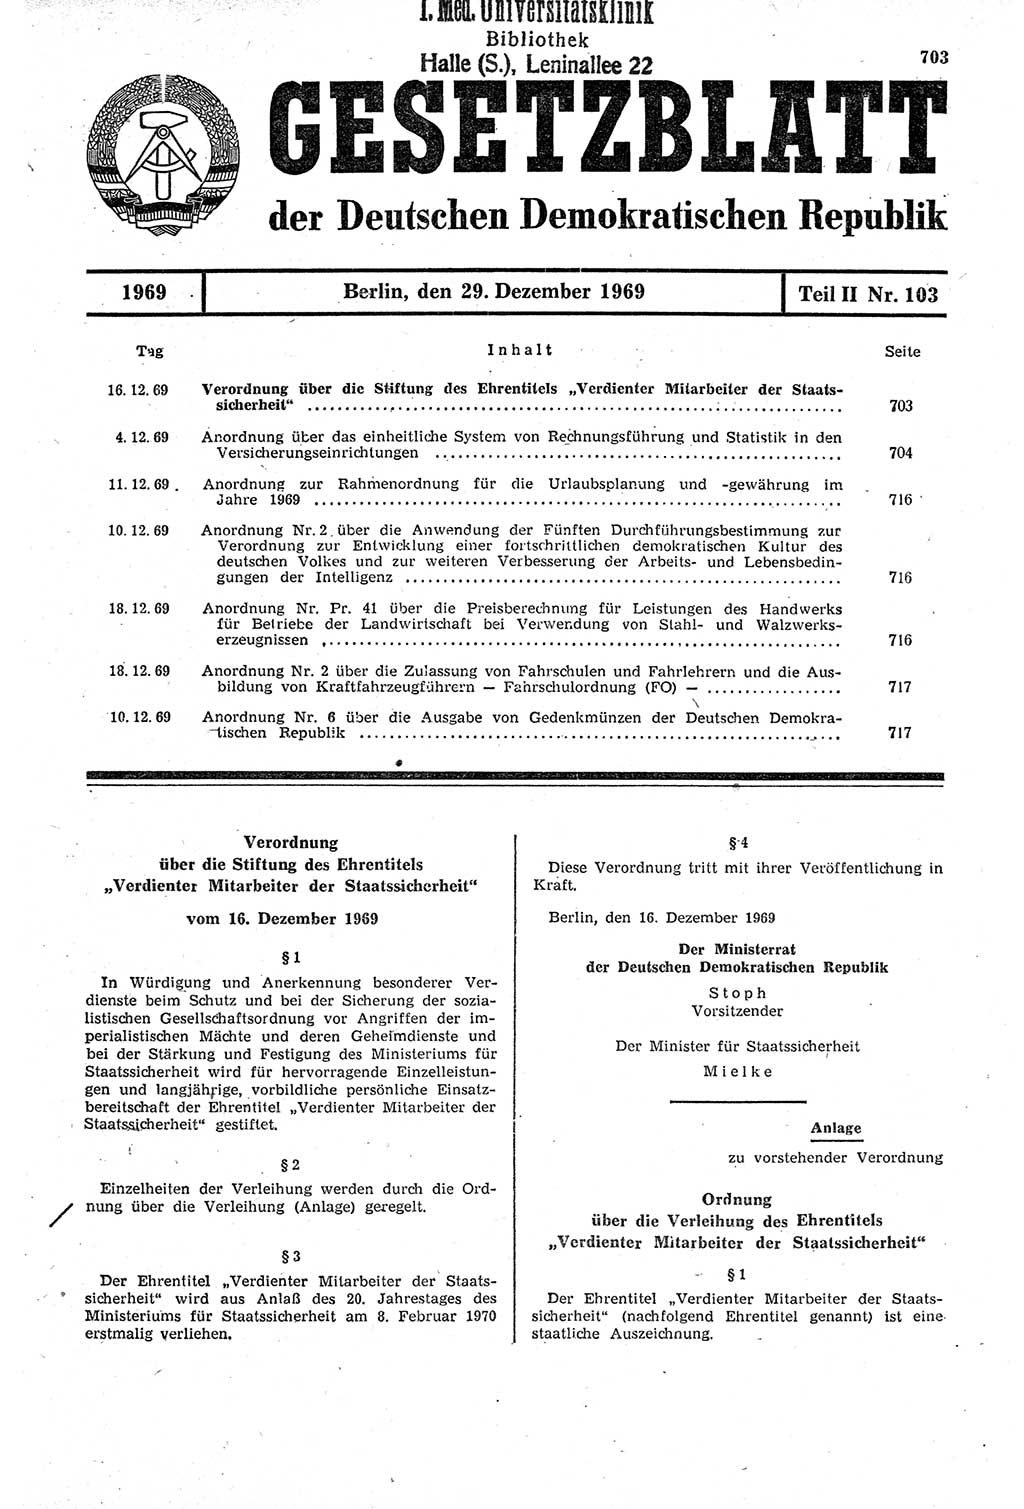 Gesetzblatt (GBl.) der Deutschen Demokratischen Republik (DDR) Teil ⅠⅠ 1969, Seite 703 (GBl. DDR ⅠⅠ 1969, S. 703)